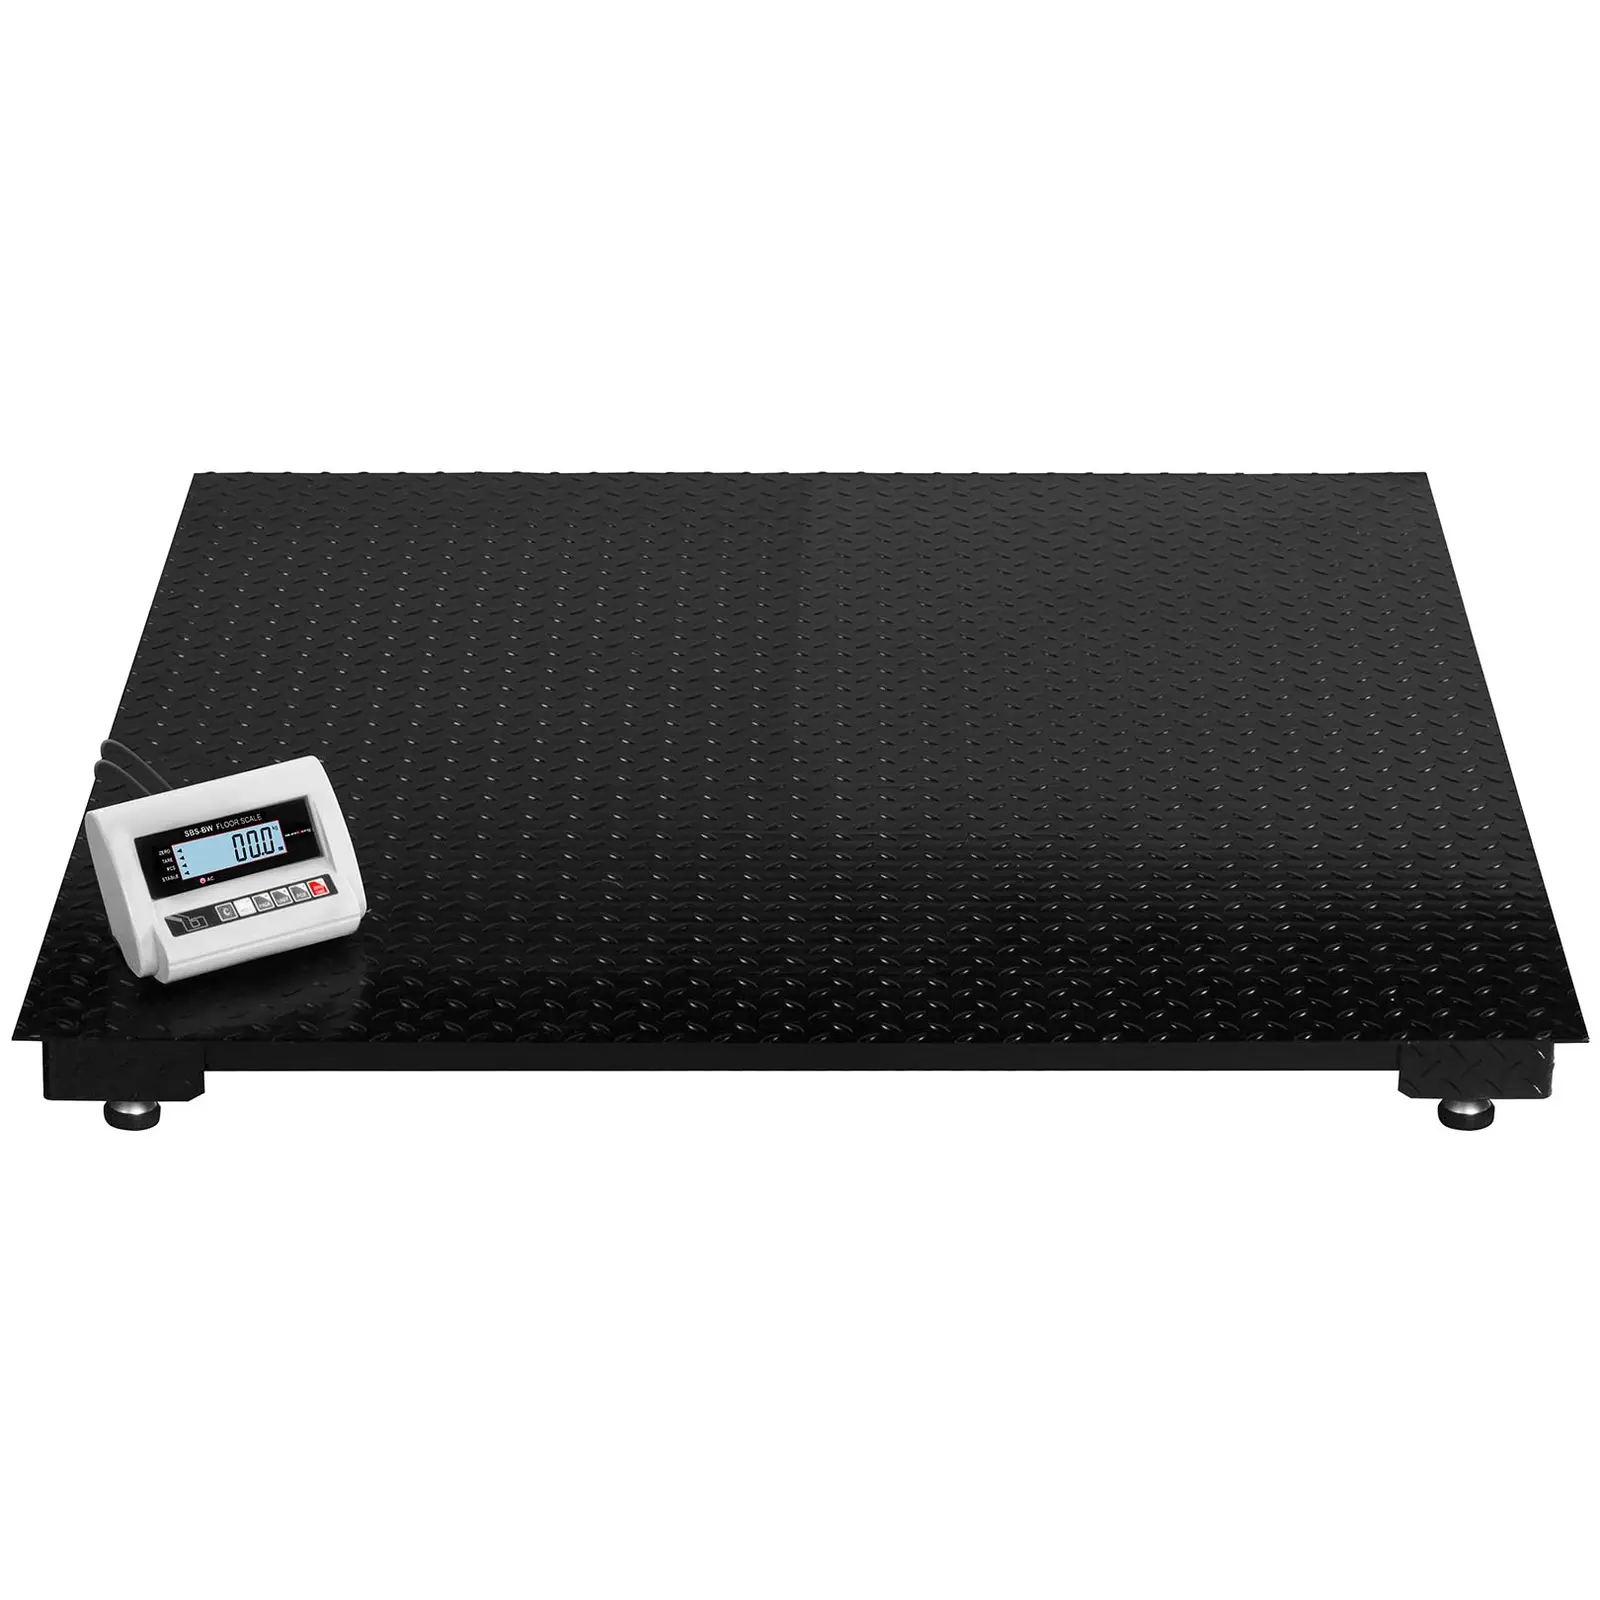 Ocasión Báscula de suelo - 3 t / 1 kg - LCD